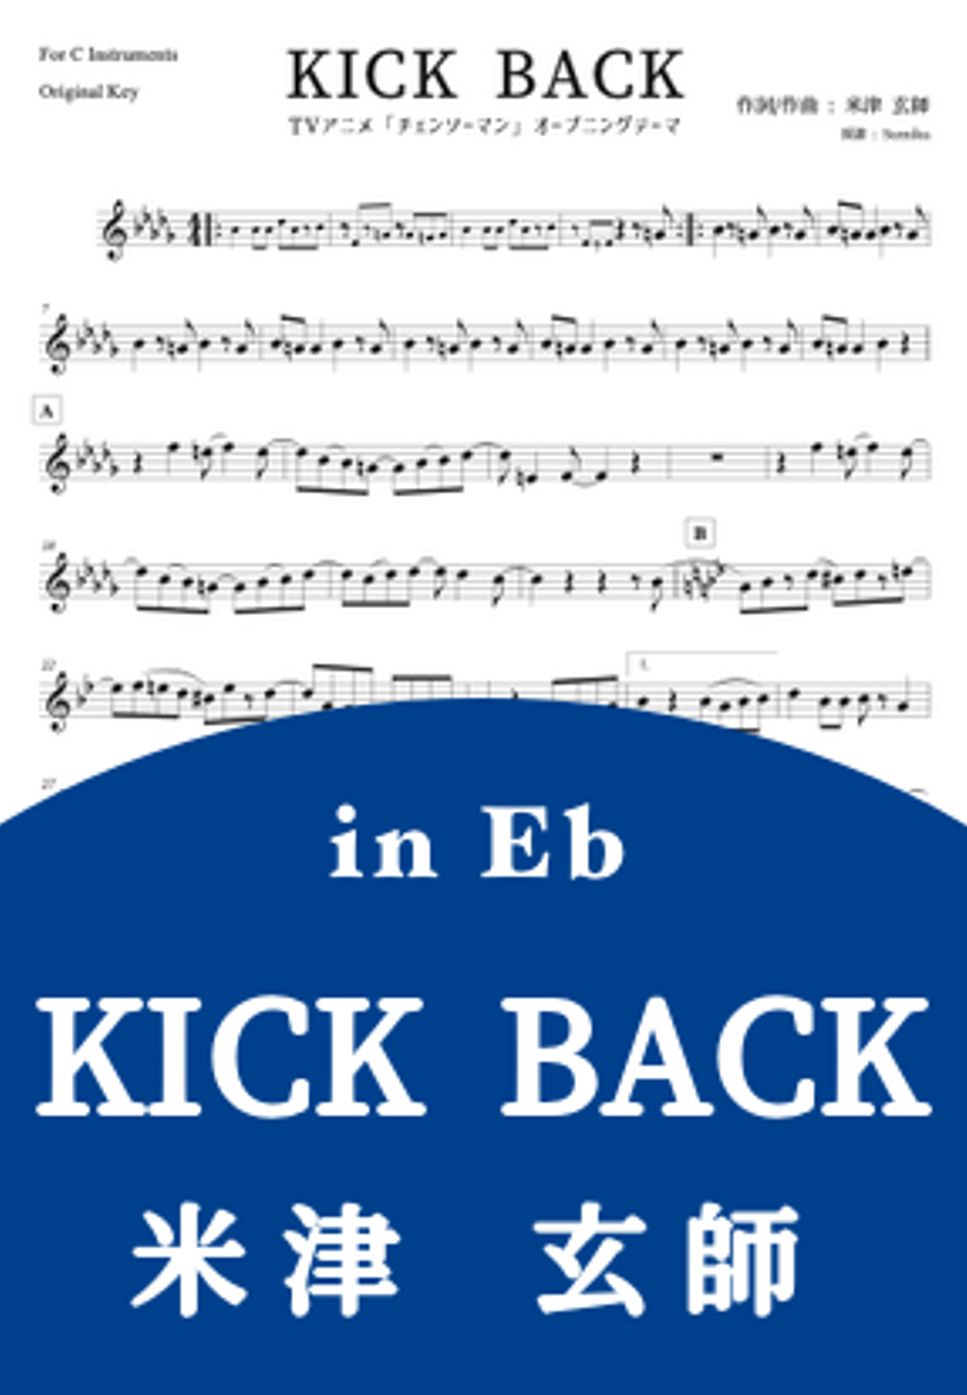 米津玄師 - KICK BACK (in Eb) by Sumika